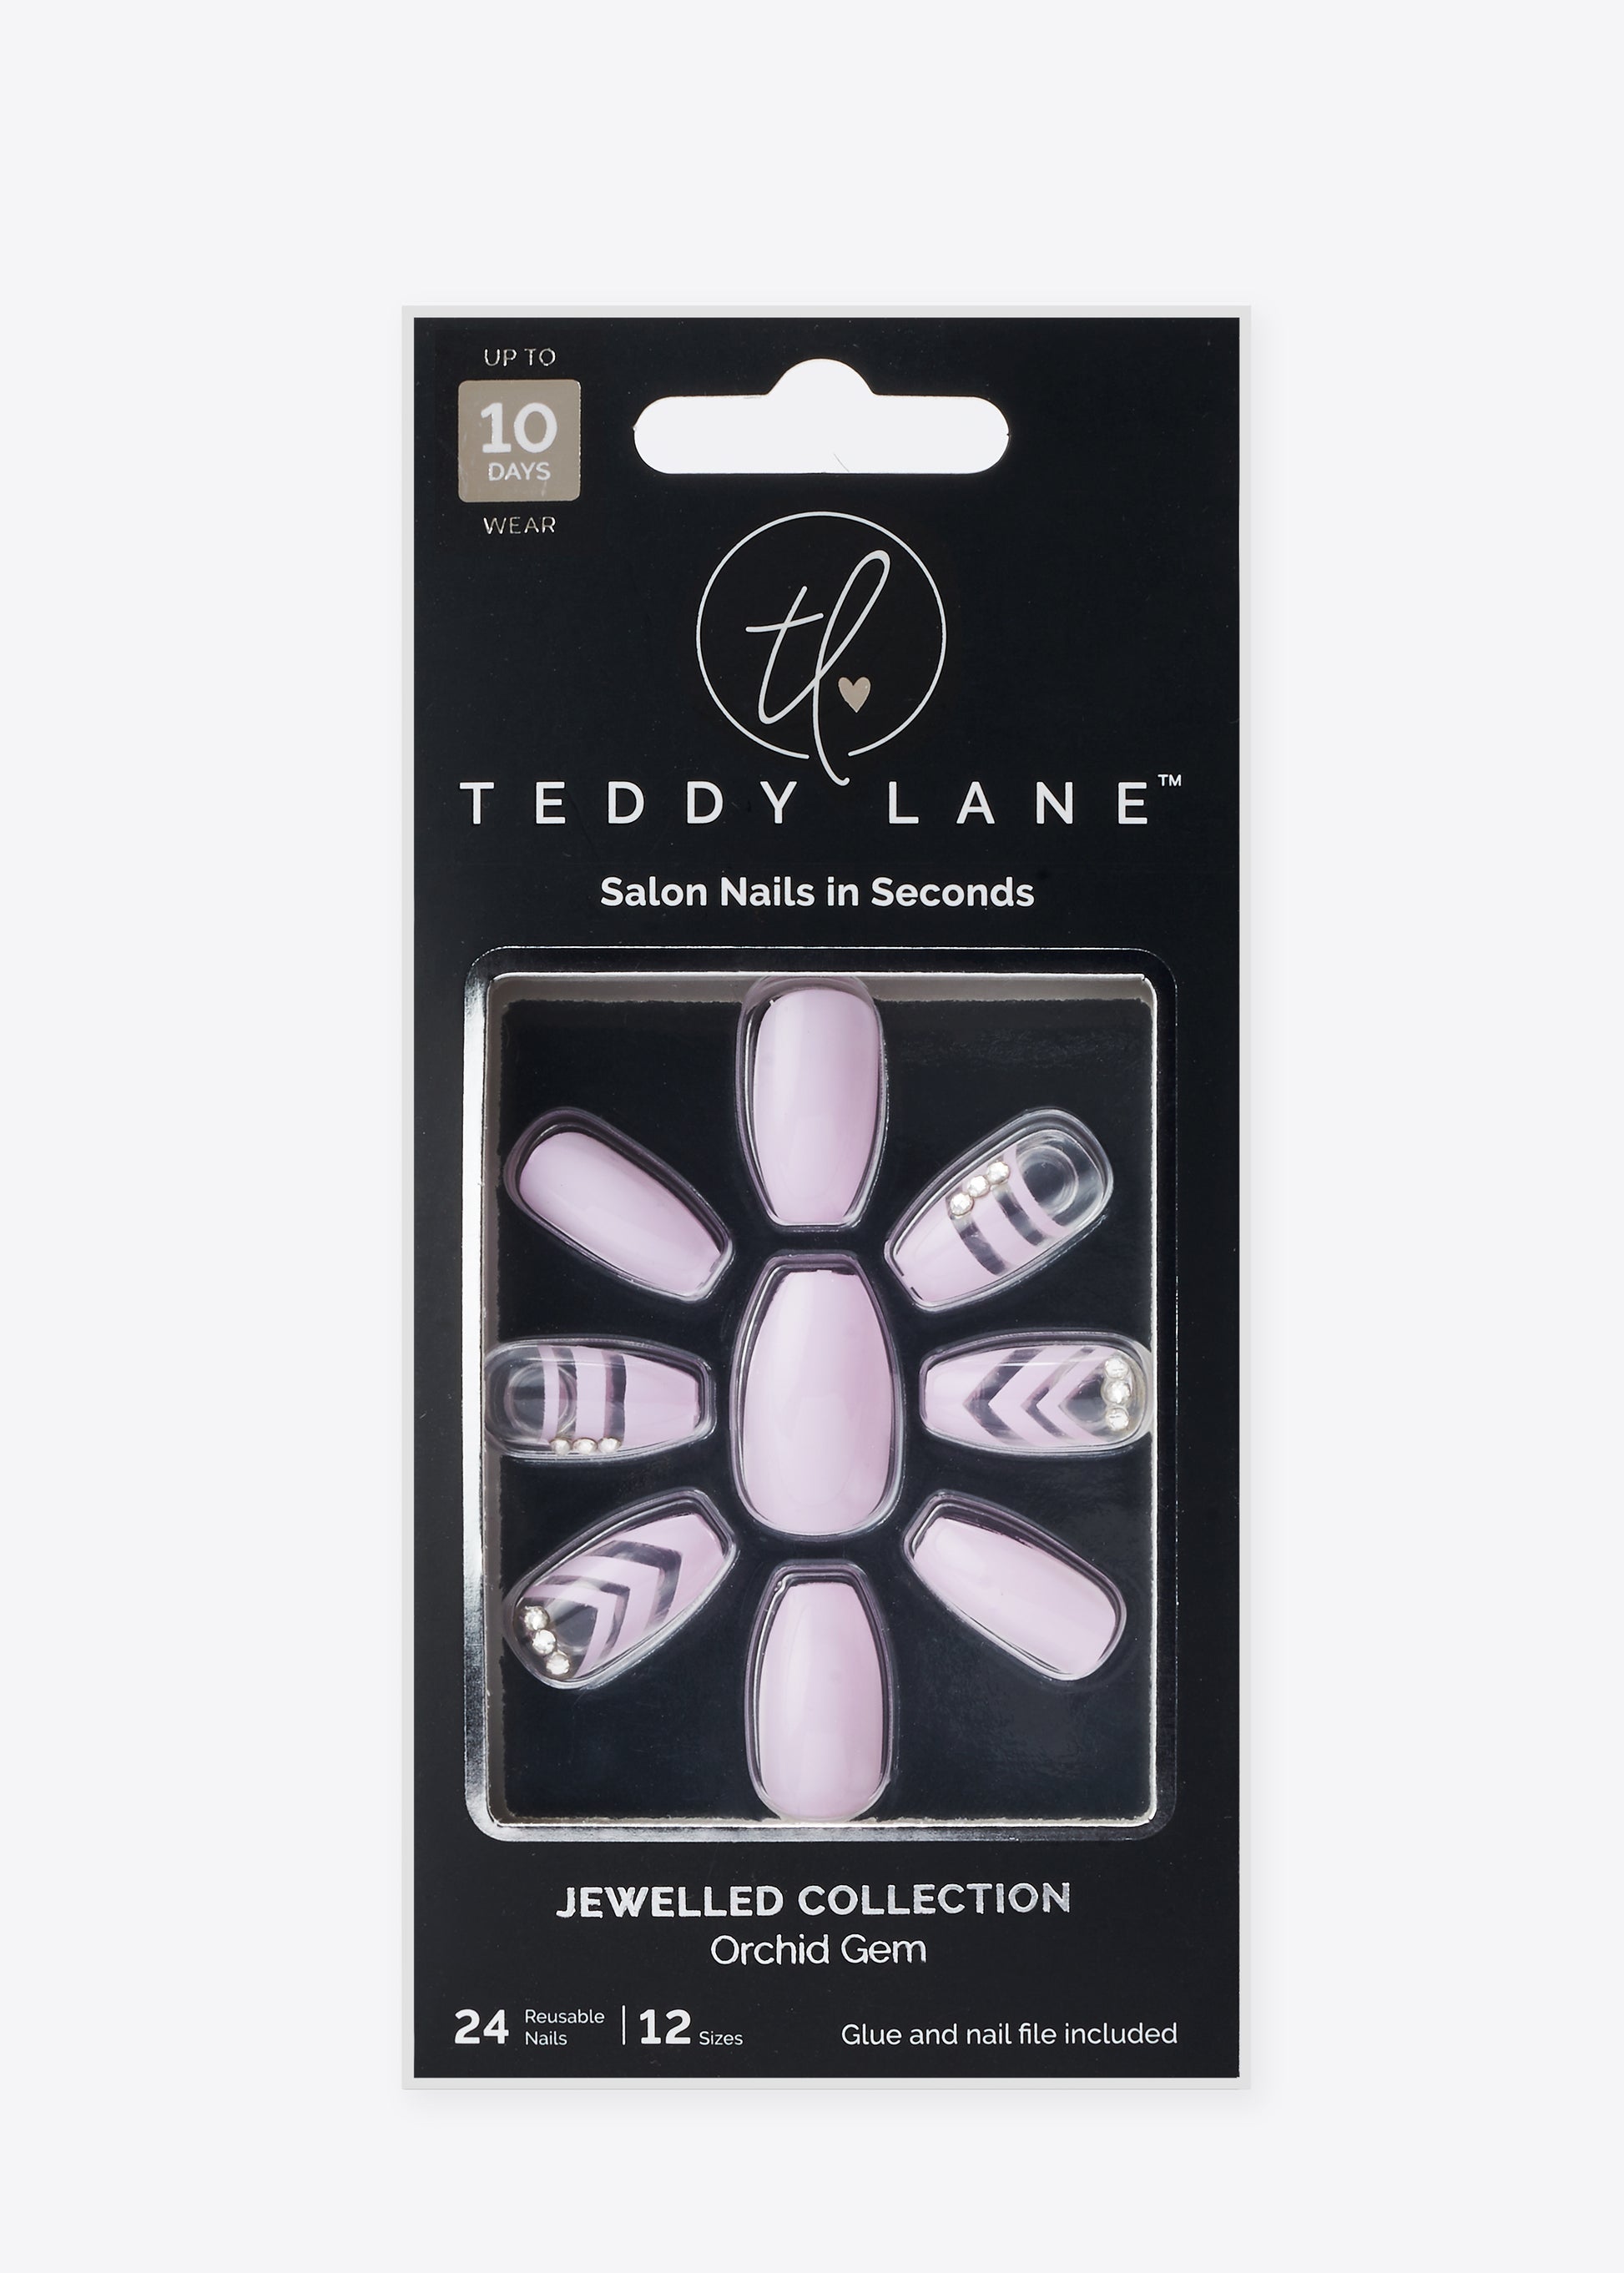 Orchid Gem - Teddy Lane